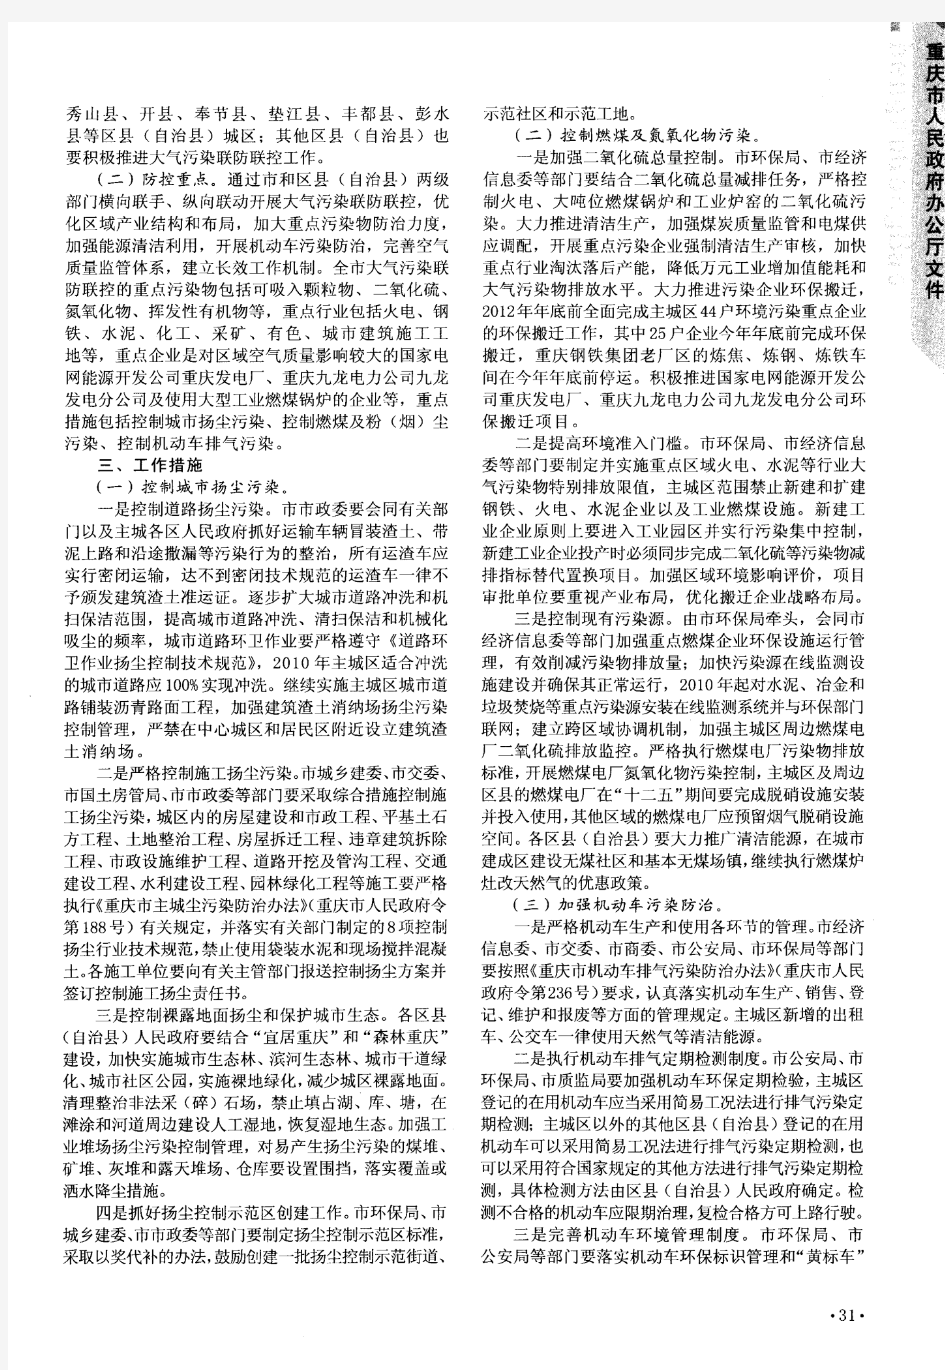 重庆市人民政府办公厅转发市环保局等部门关于推进重庆市大气污染联防联控工作改善区域空气质量实施方案的通